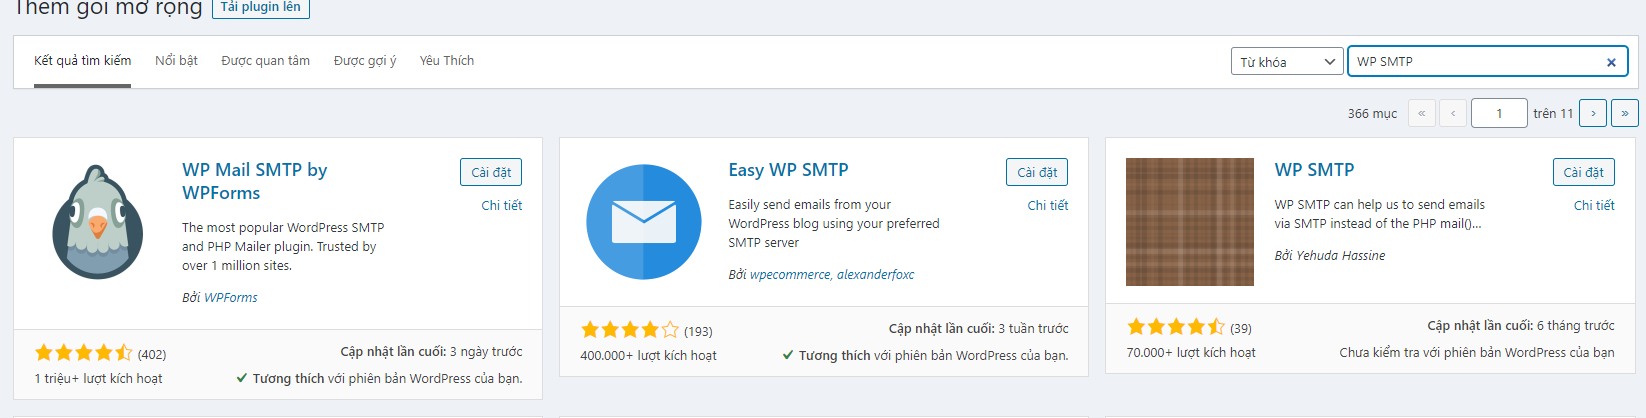 Cách cài đặt SMTP cho Wordpress